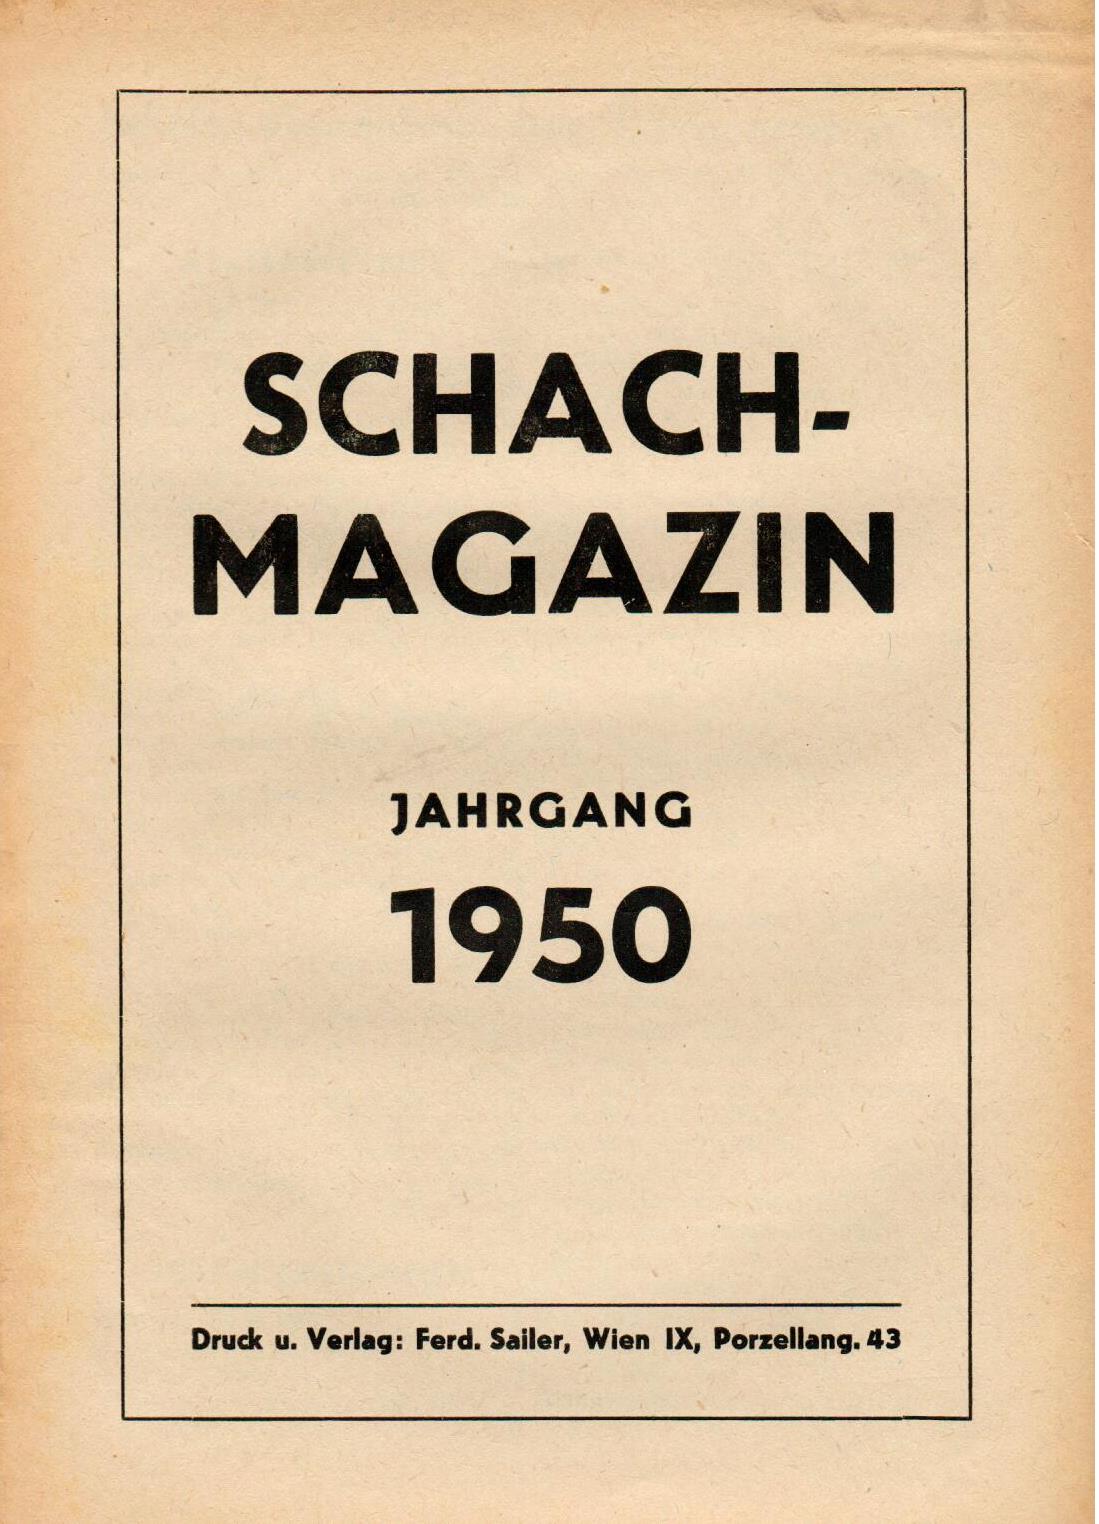 SCHACH-MAGAZIN / 1950 vol 5, no 1-12 compl.,